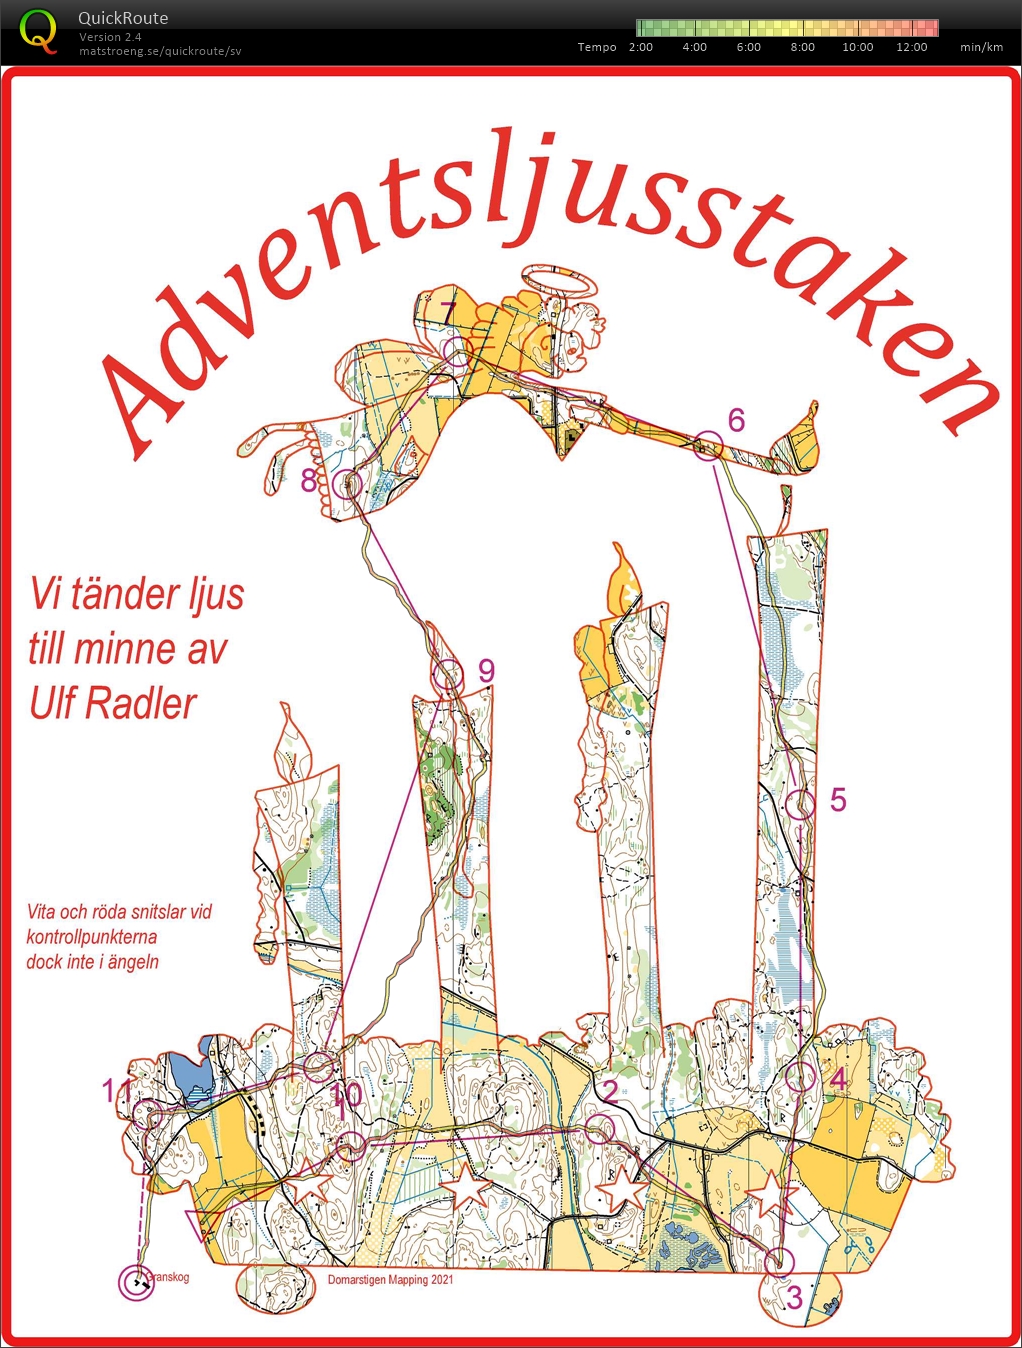 Adventsljusstaken - till minne av Ulf Radler (2021-12-19)